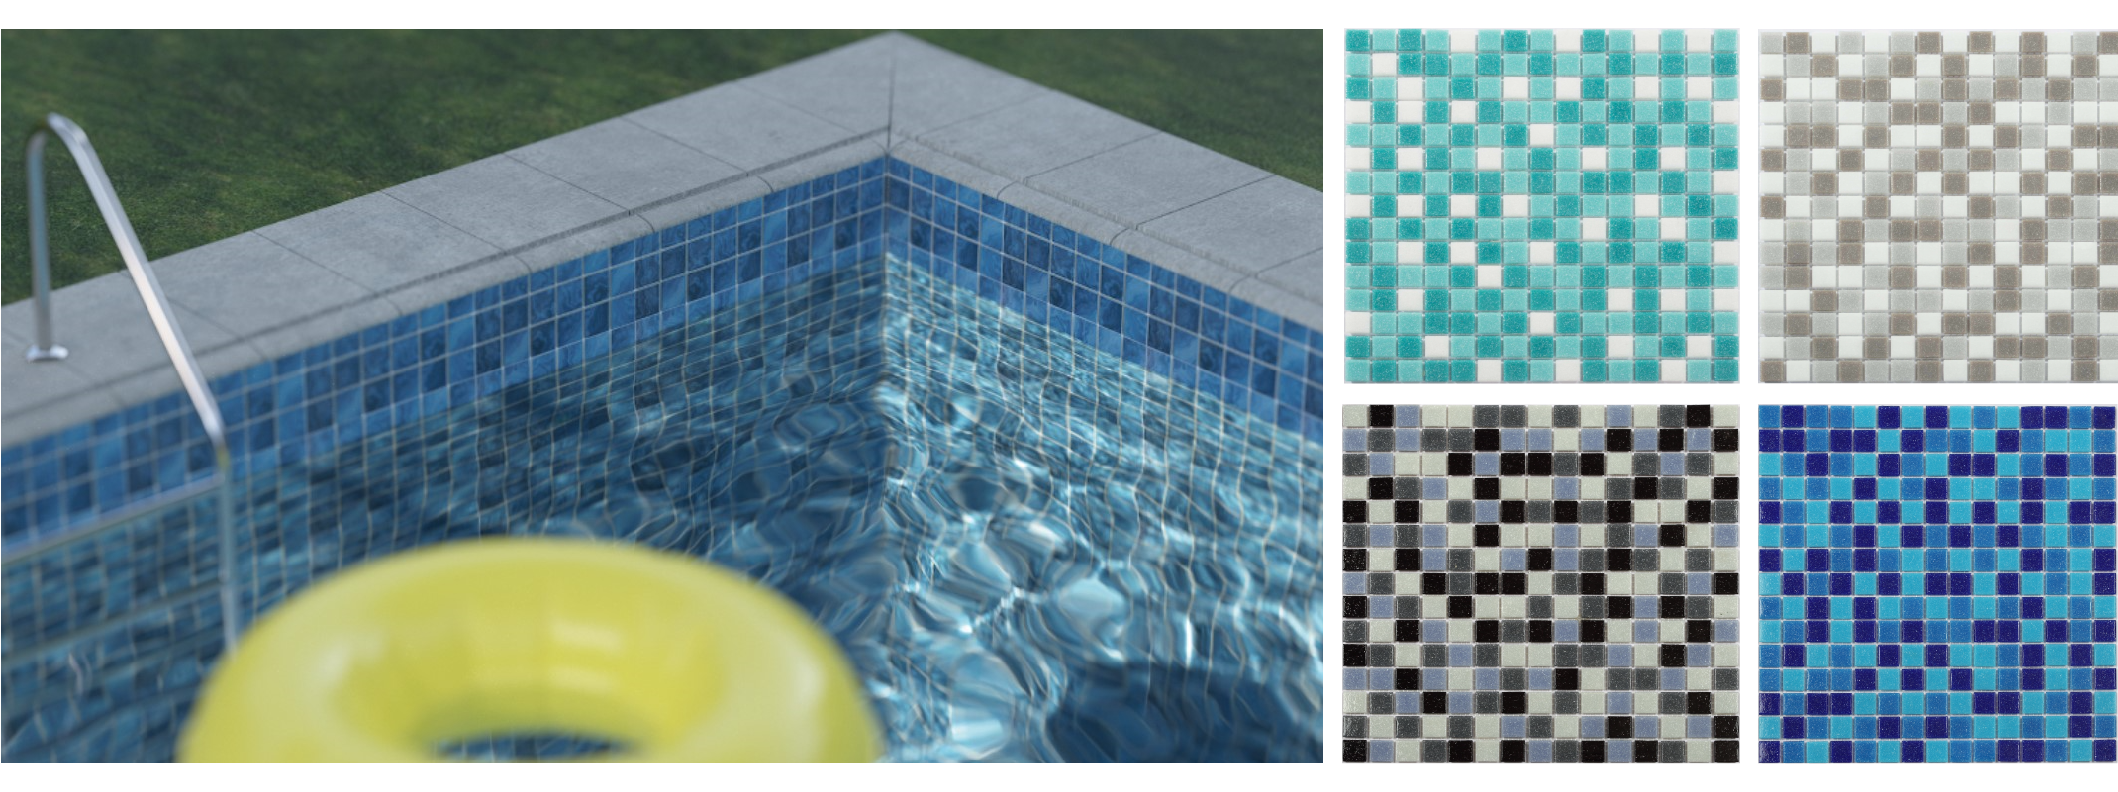 Ceramica para piscinas. mosaicos para piscinas. revestimiento para piscinas. piso para piscina. mosaicos de ceramica. venta de mosaicos para piscinas. mosaico de piscina. mosaico piscina. azulejo para piscina. azulejos para piscinas.